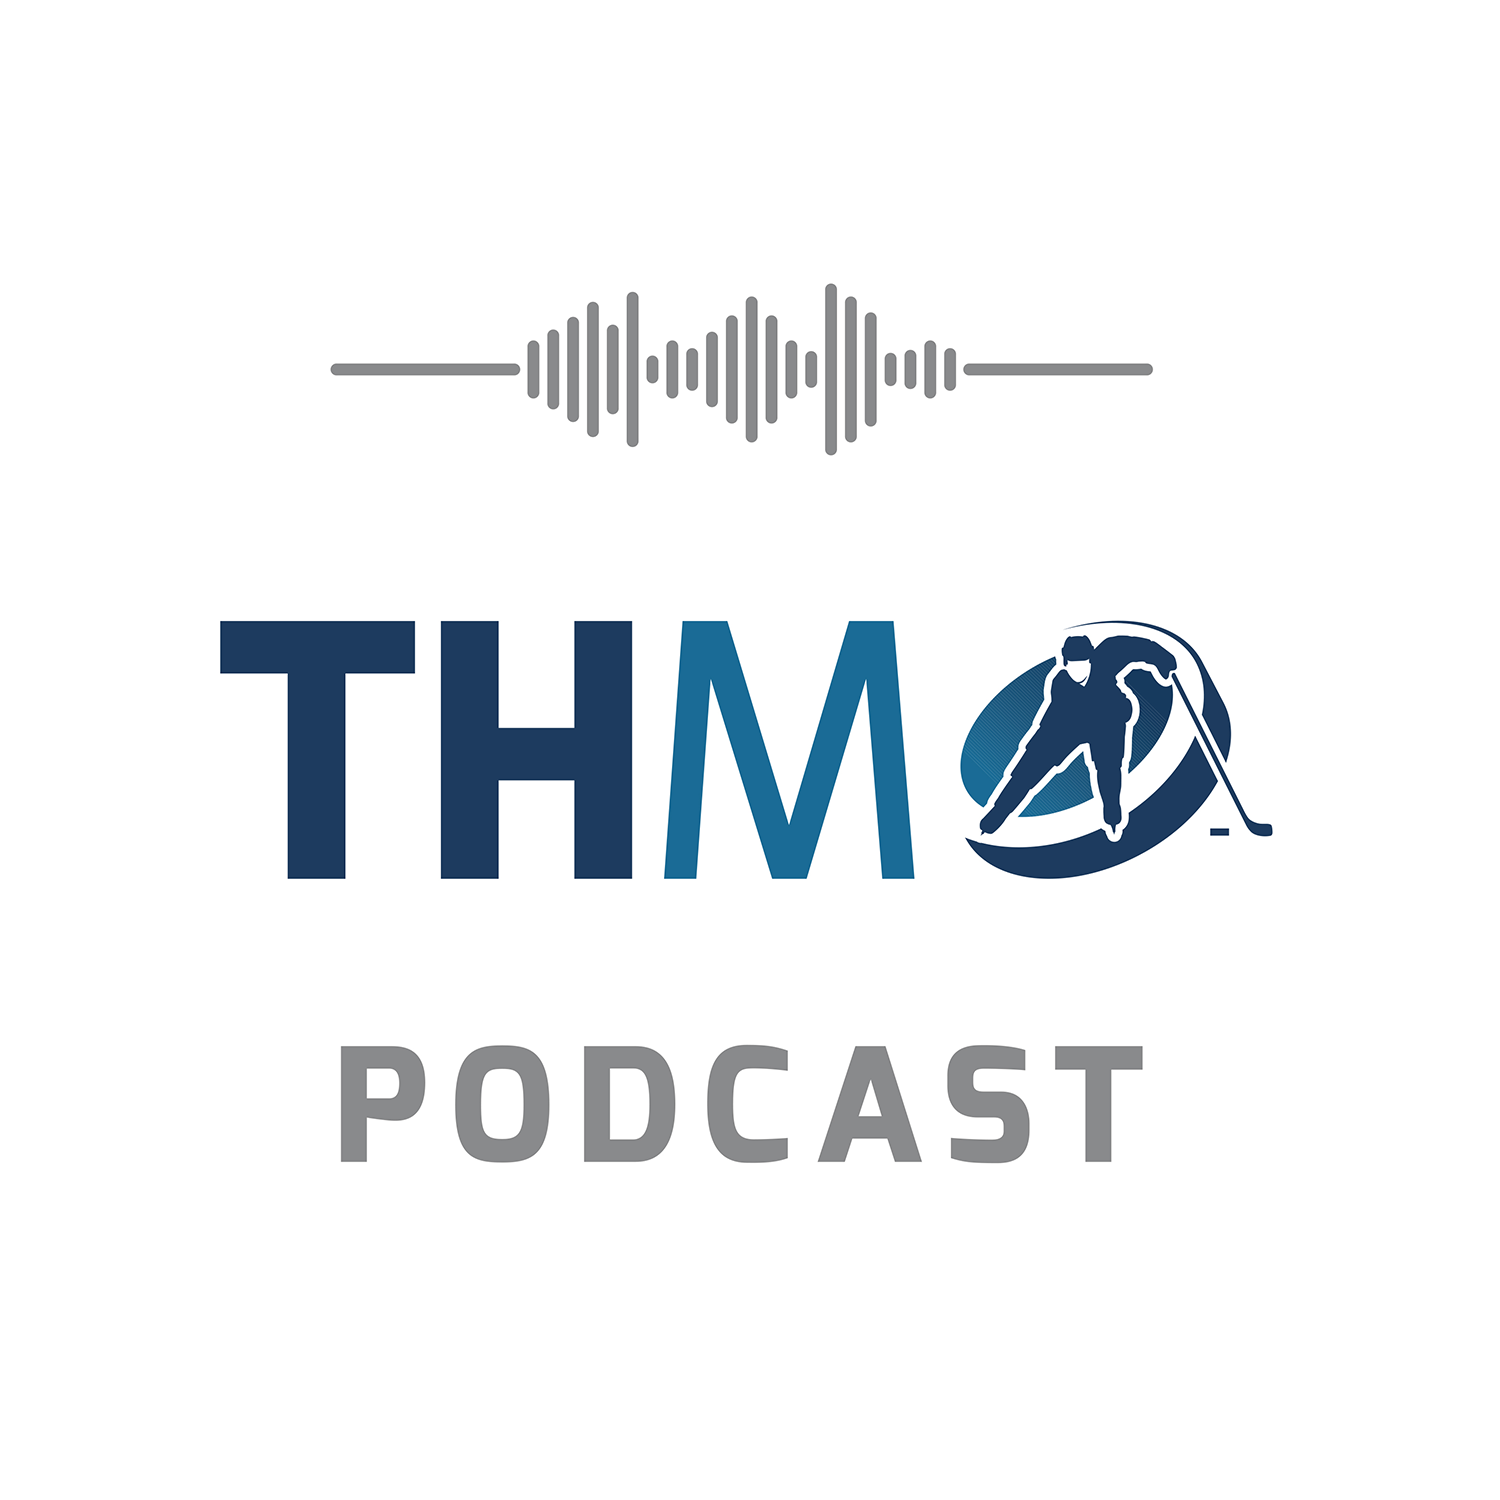 THM Podcast - Rozhovory v Gyme s doktorom Džejom